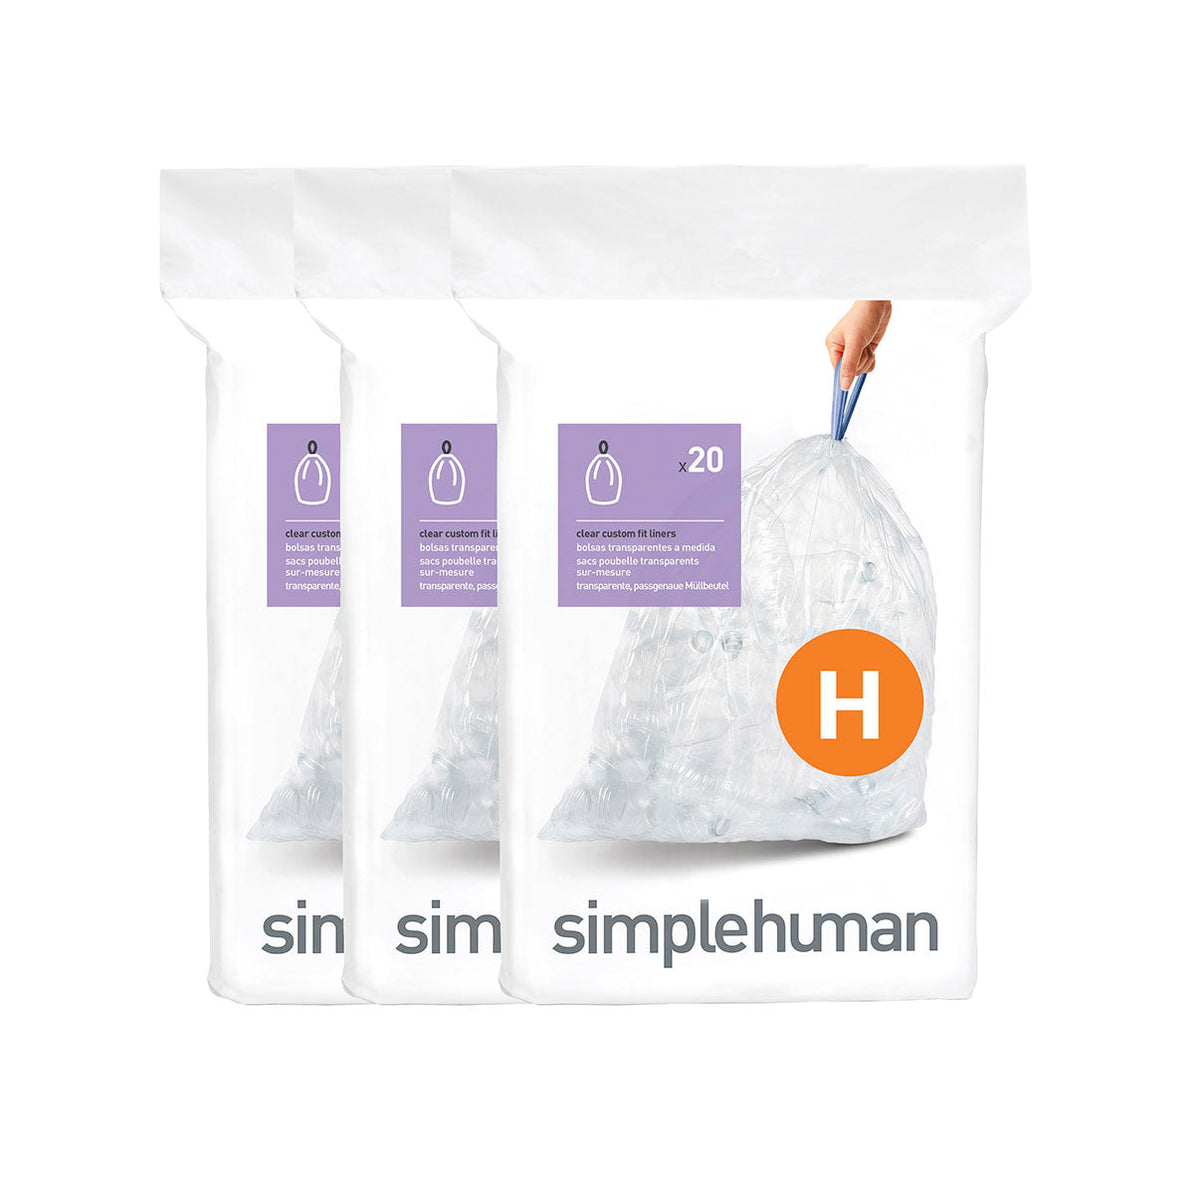 שקיות אשפה לפח 30 ליטר (H) דגם Simplehuman - CW0168 - סימפליומן